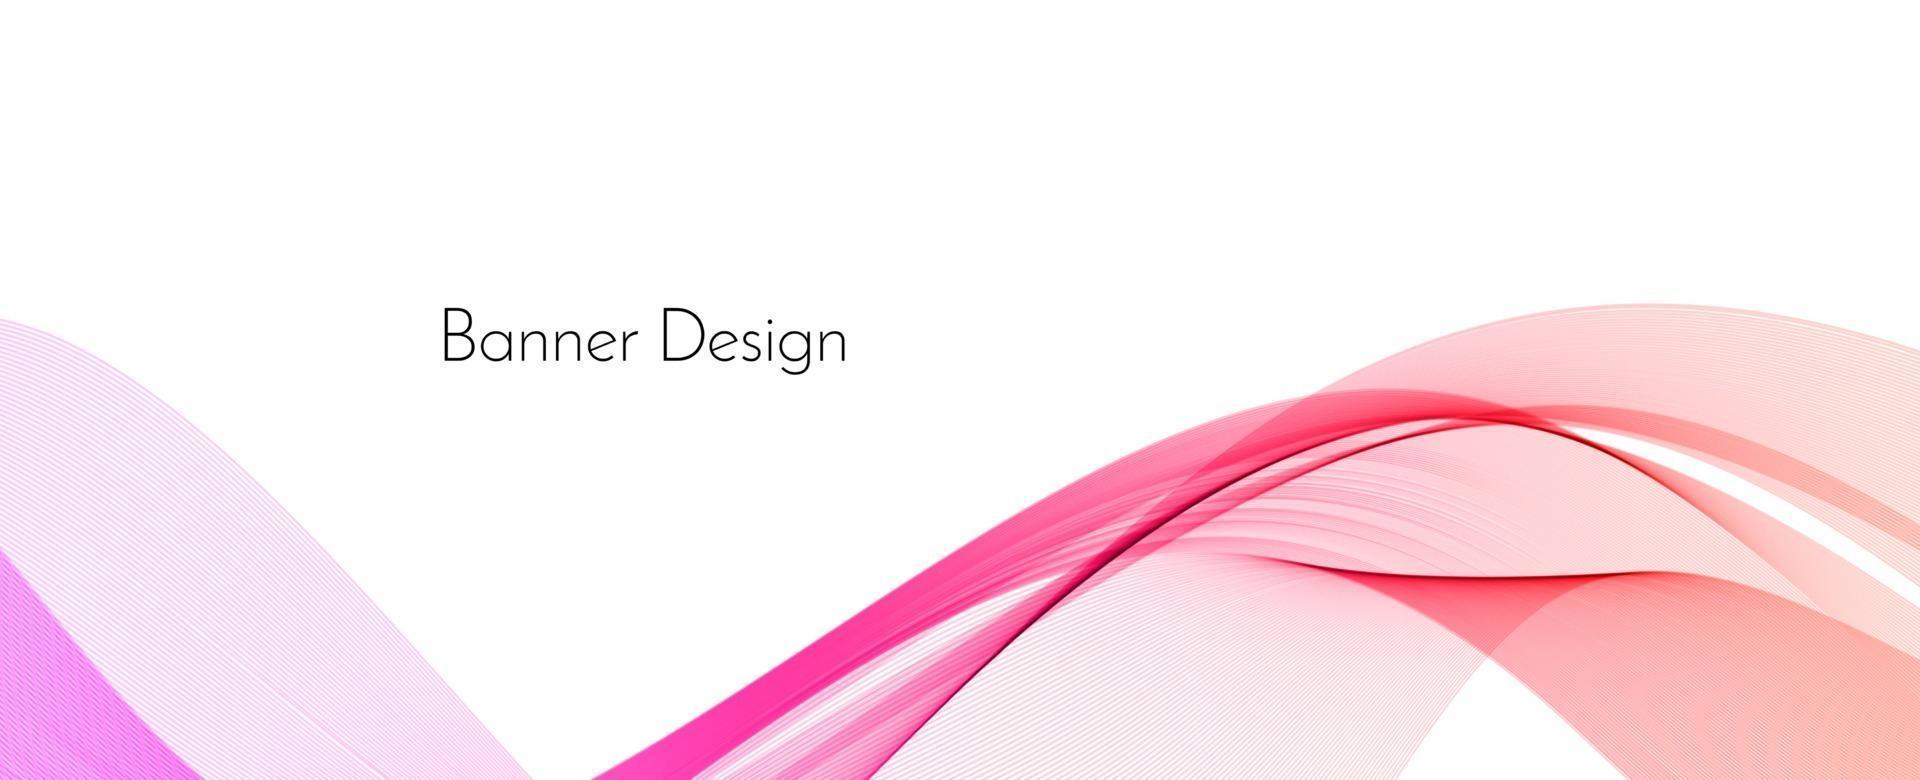 abstrato elegante cor-de-rosa decorativo moderno onda banner fundo vetor